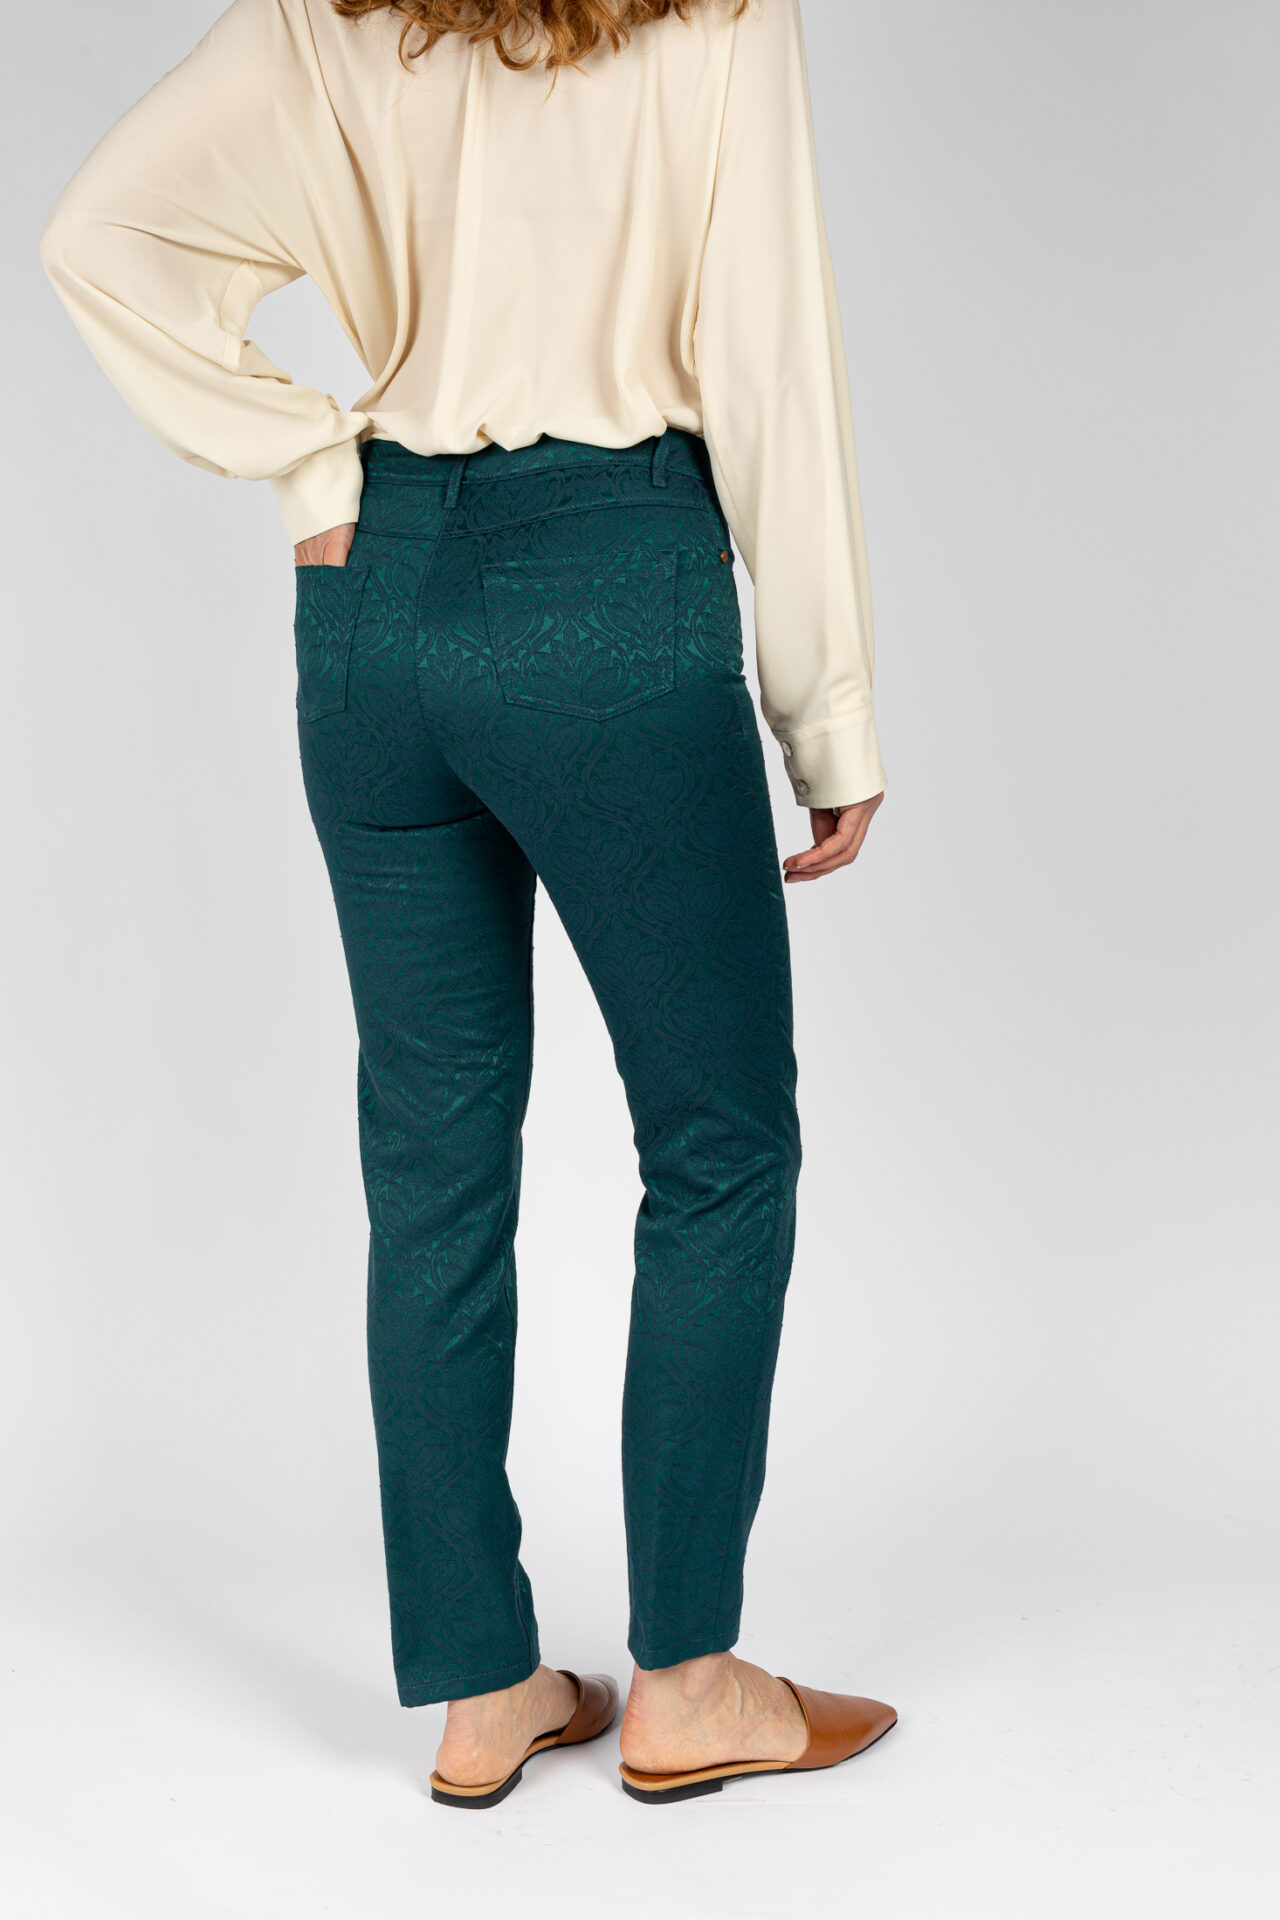 Pantaloni linea Jeans tessuto jacquard disegno fiore colore verde P19950GT - 5